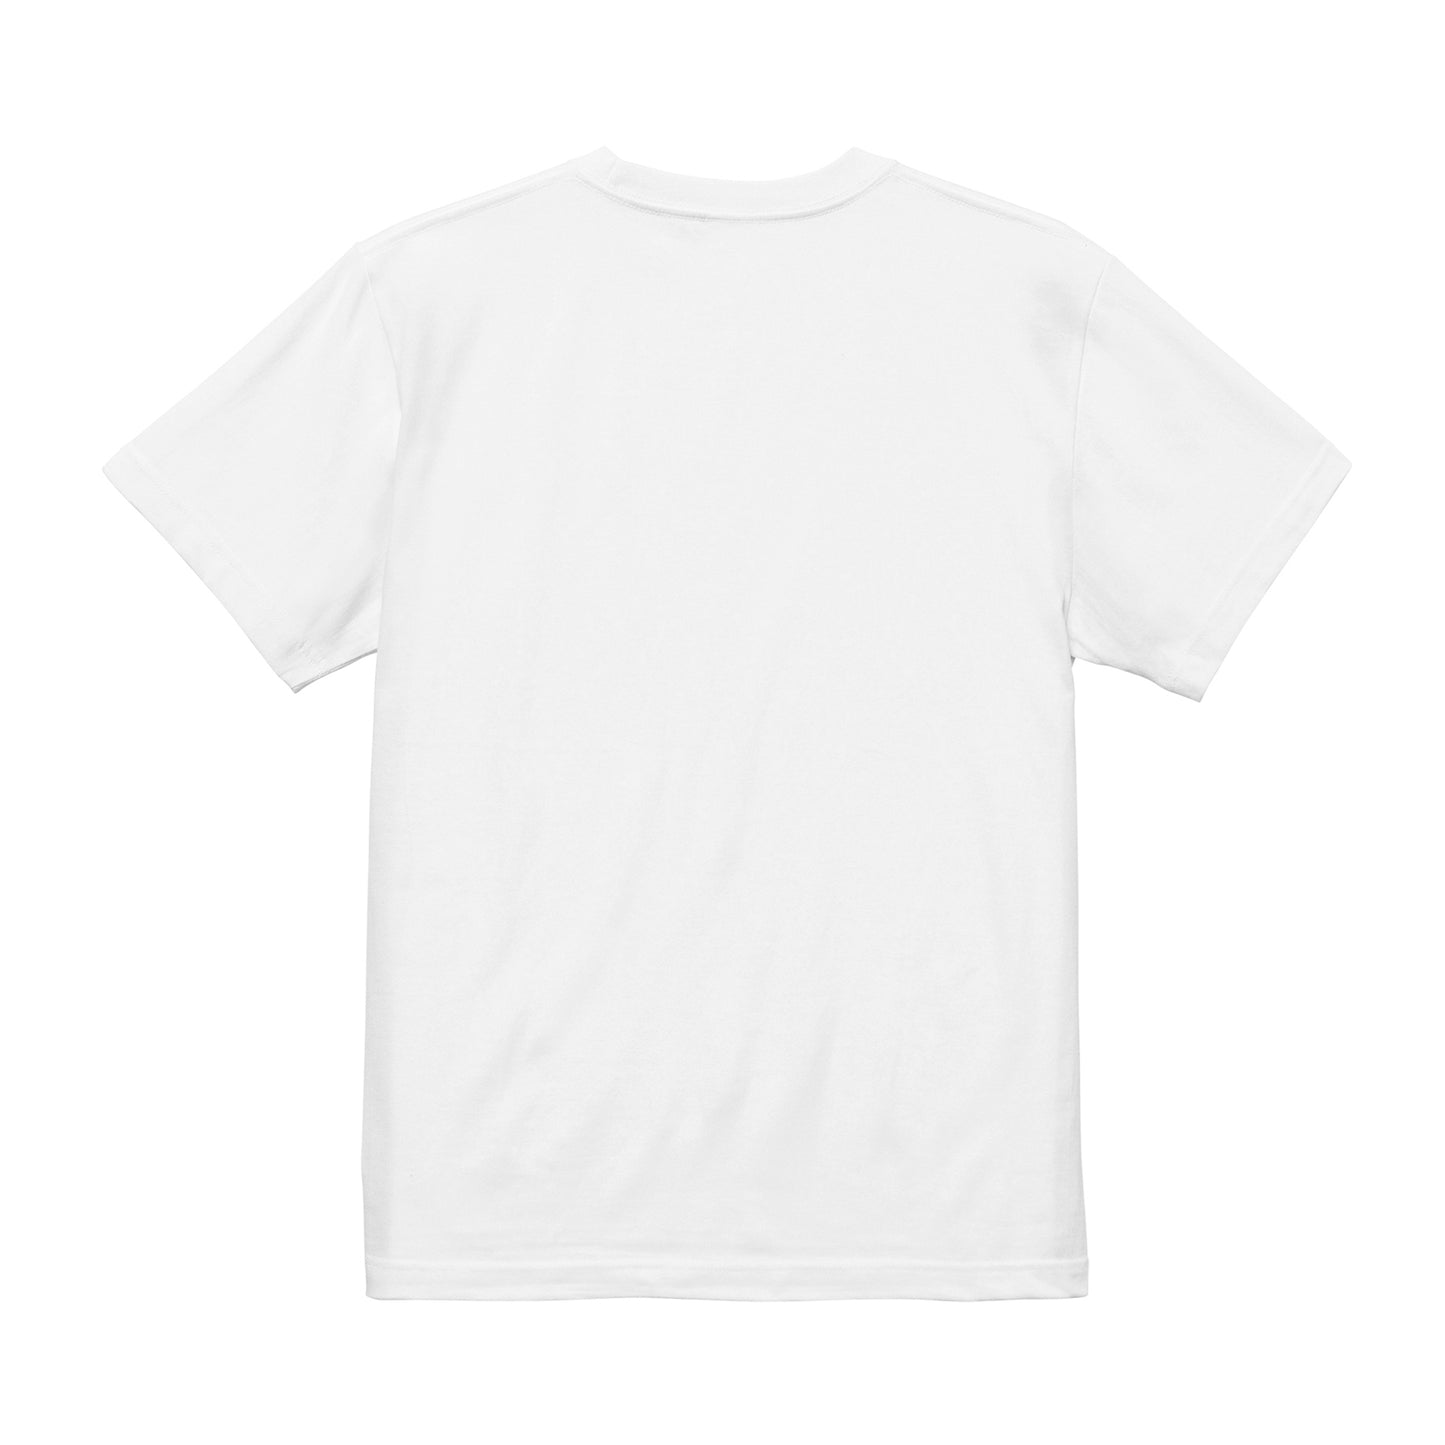 MetaKozo Boxlogo T-Shirts